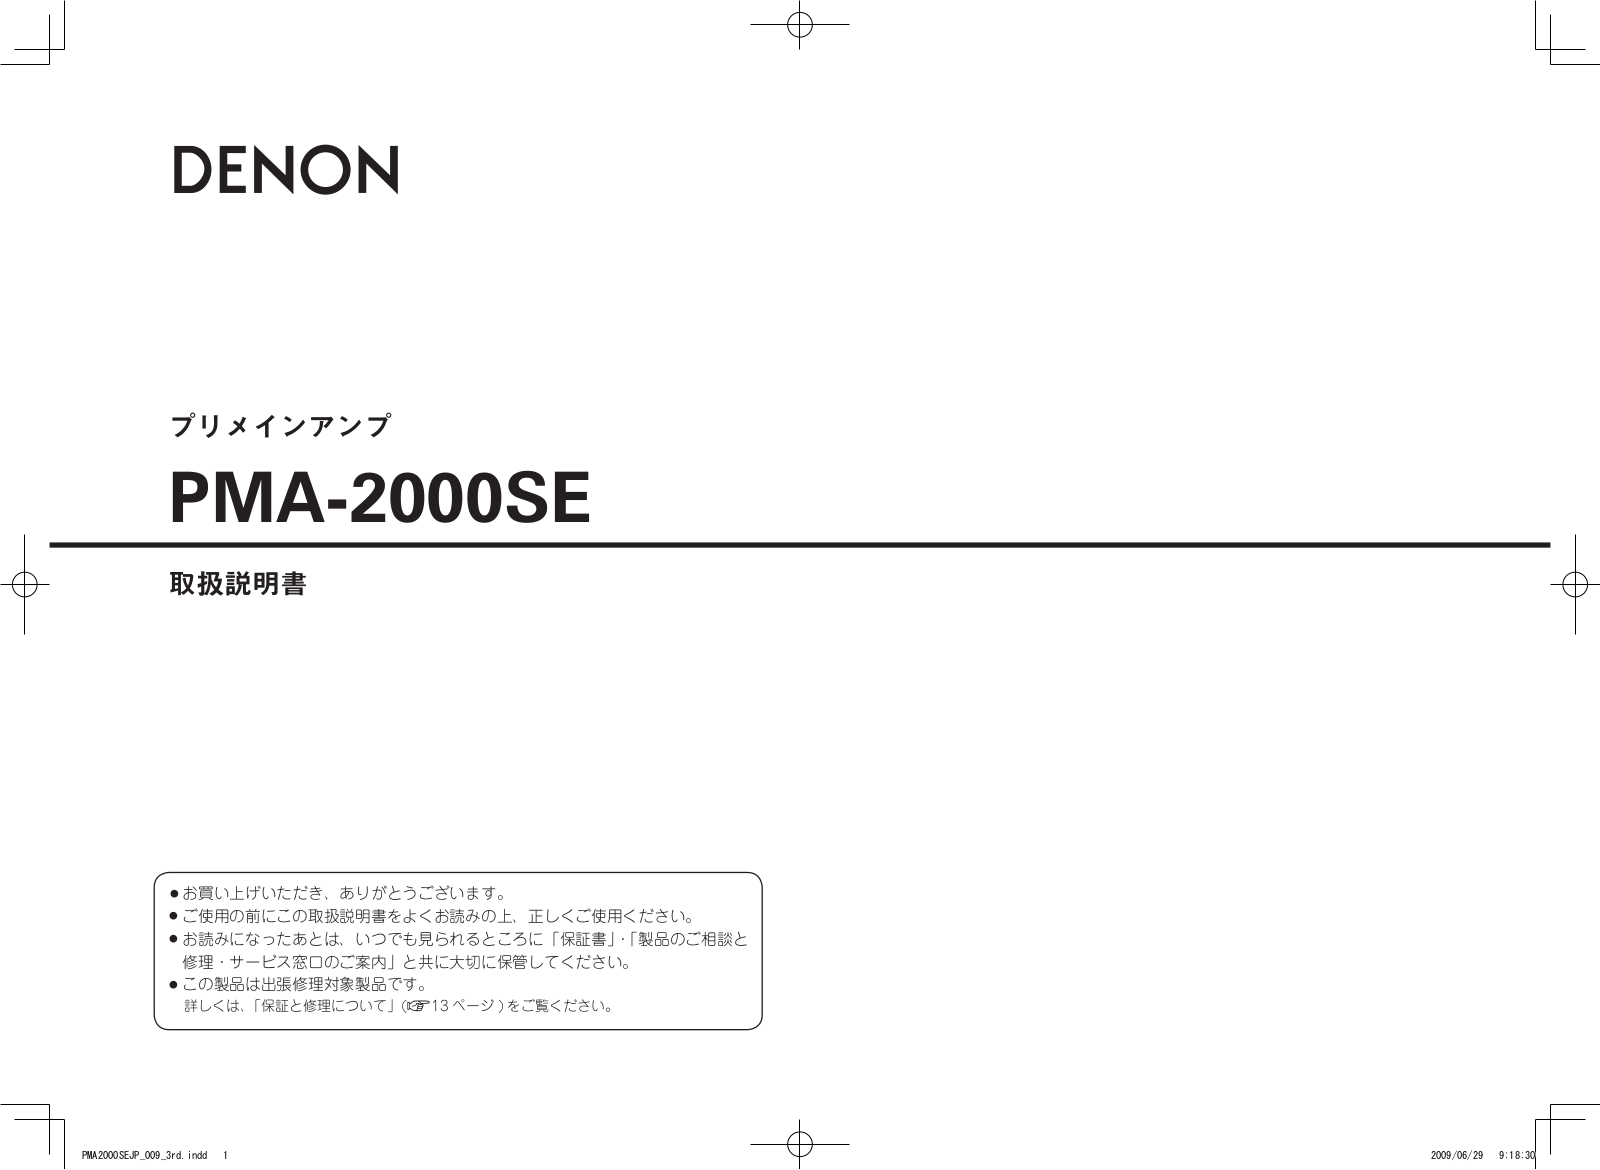 Denon PMA-2000SE Owner's Manual